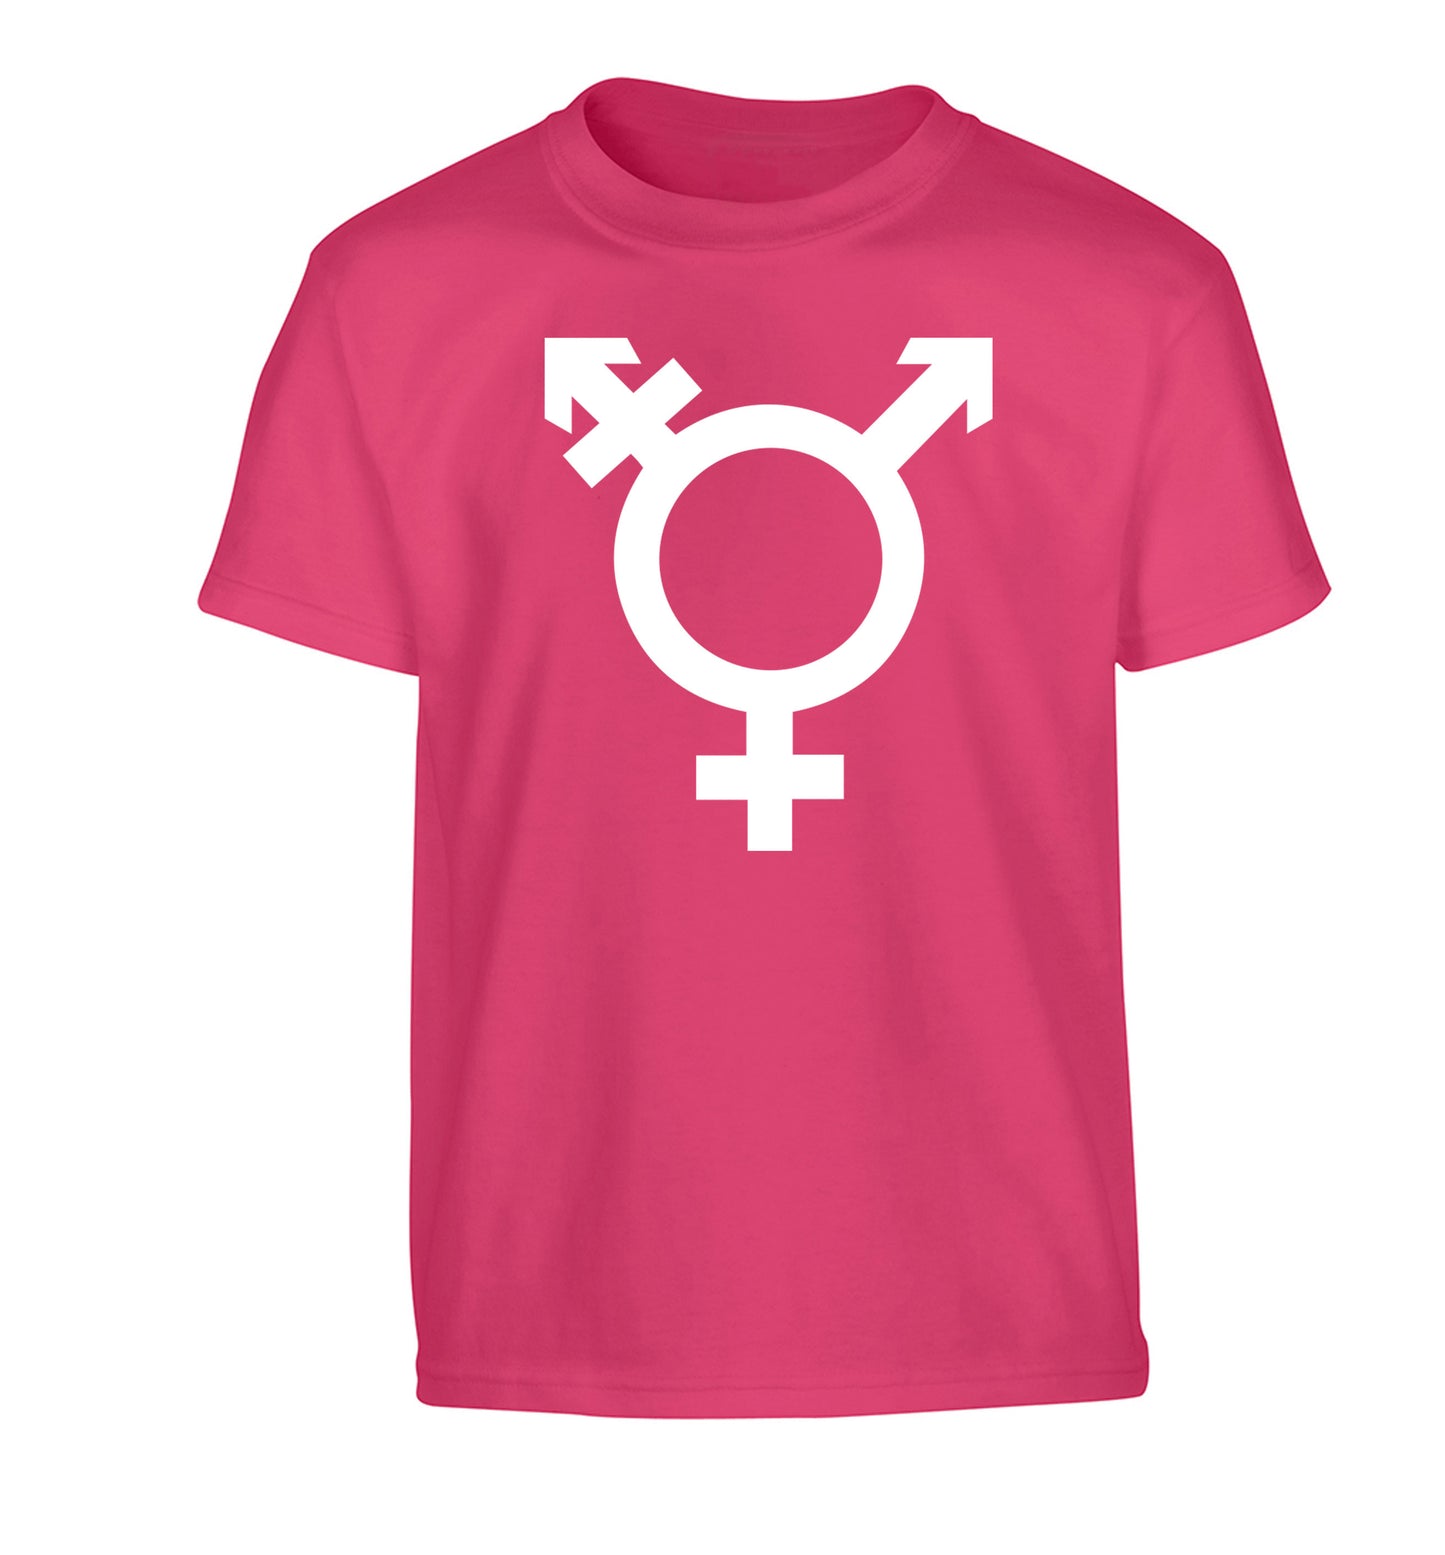 Gender neutral symbol large Children's pink Tshirt 12-14 Years